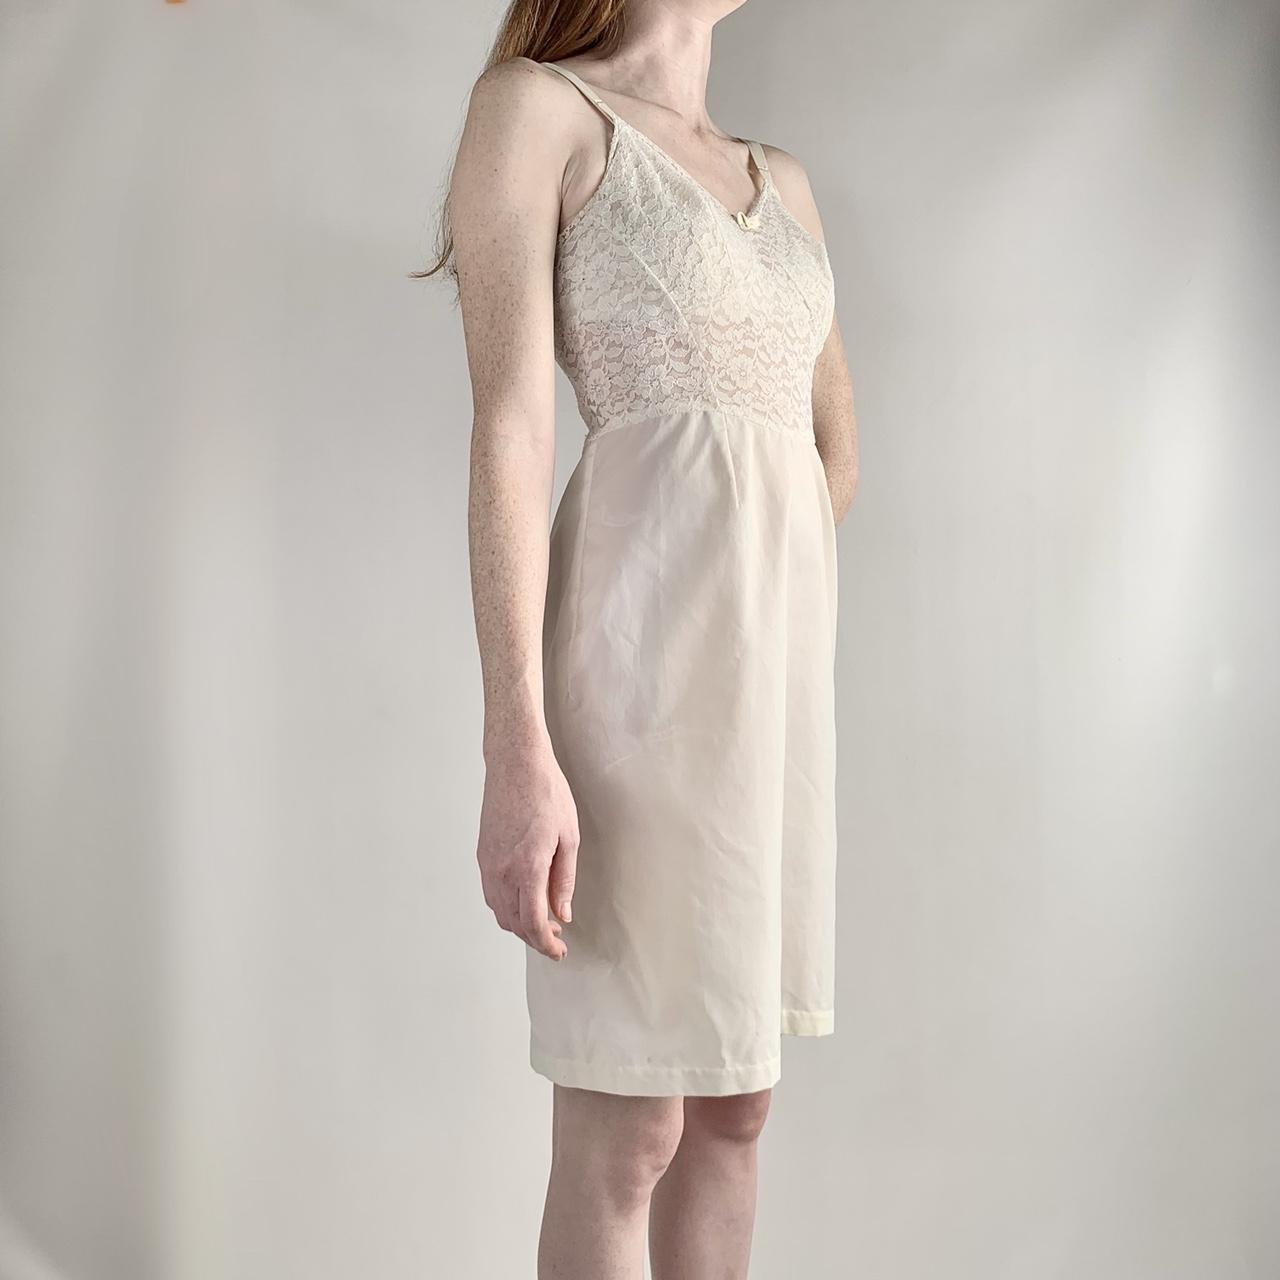 Women's Cream and White Dress (2)